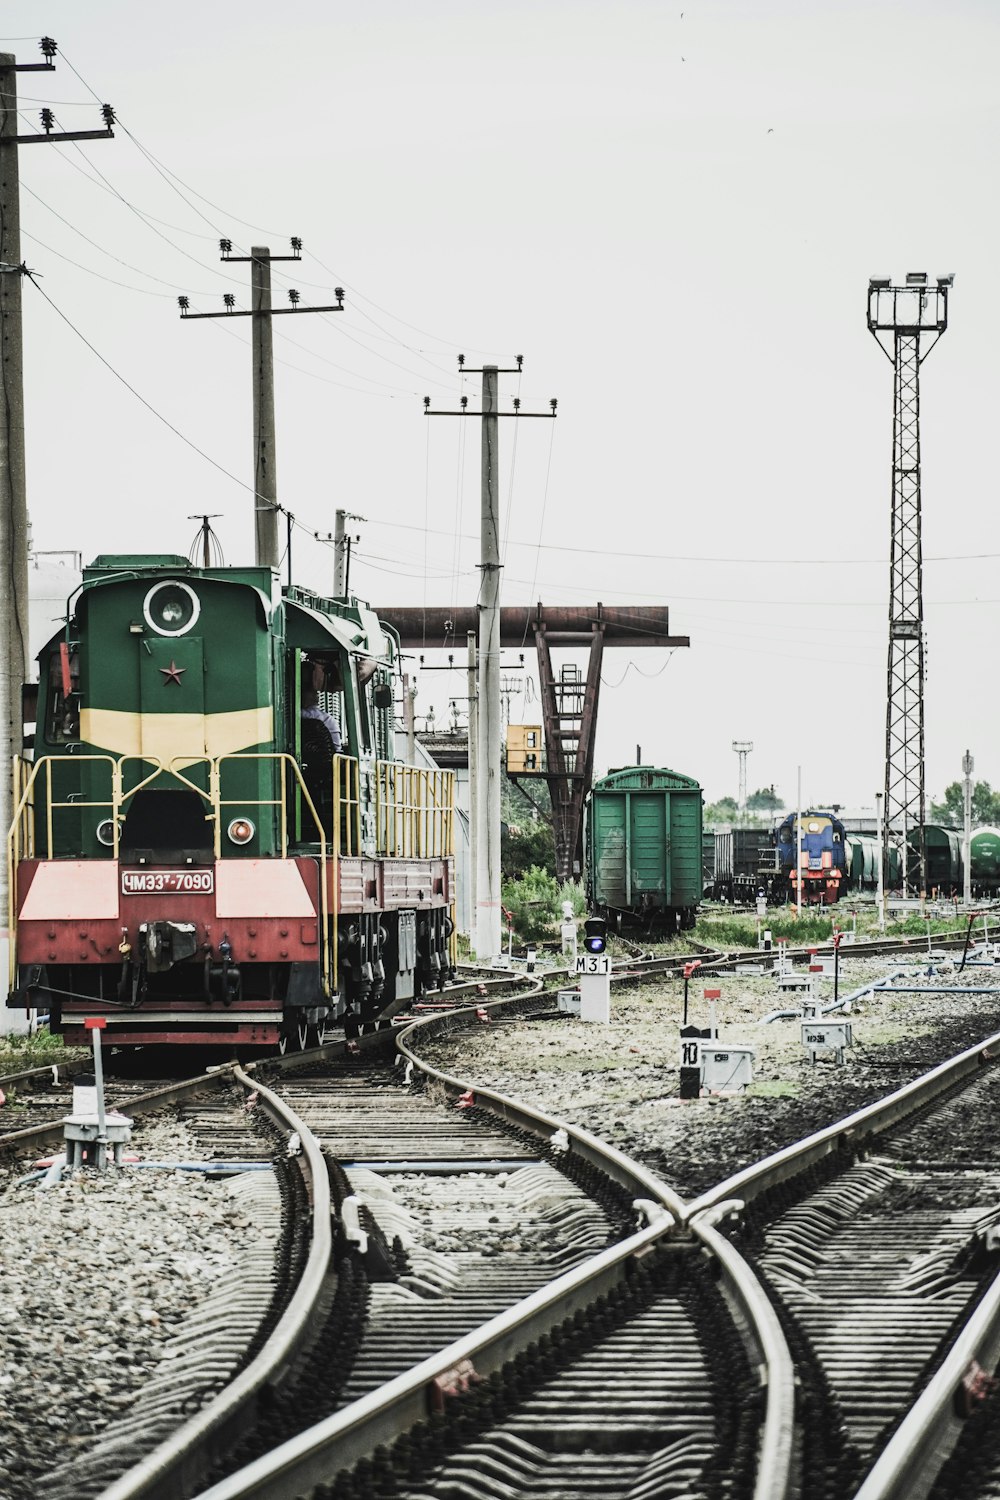 trem verde e amarelo nos trilhos ferroviários durante o dia